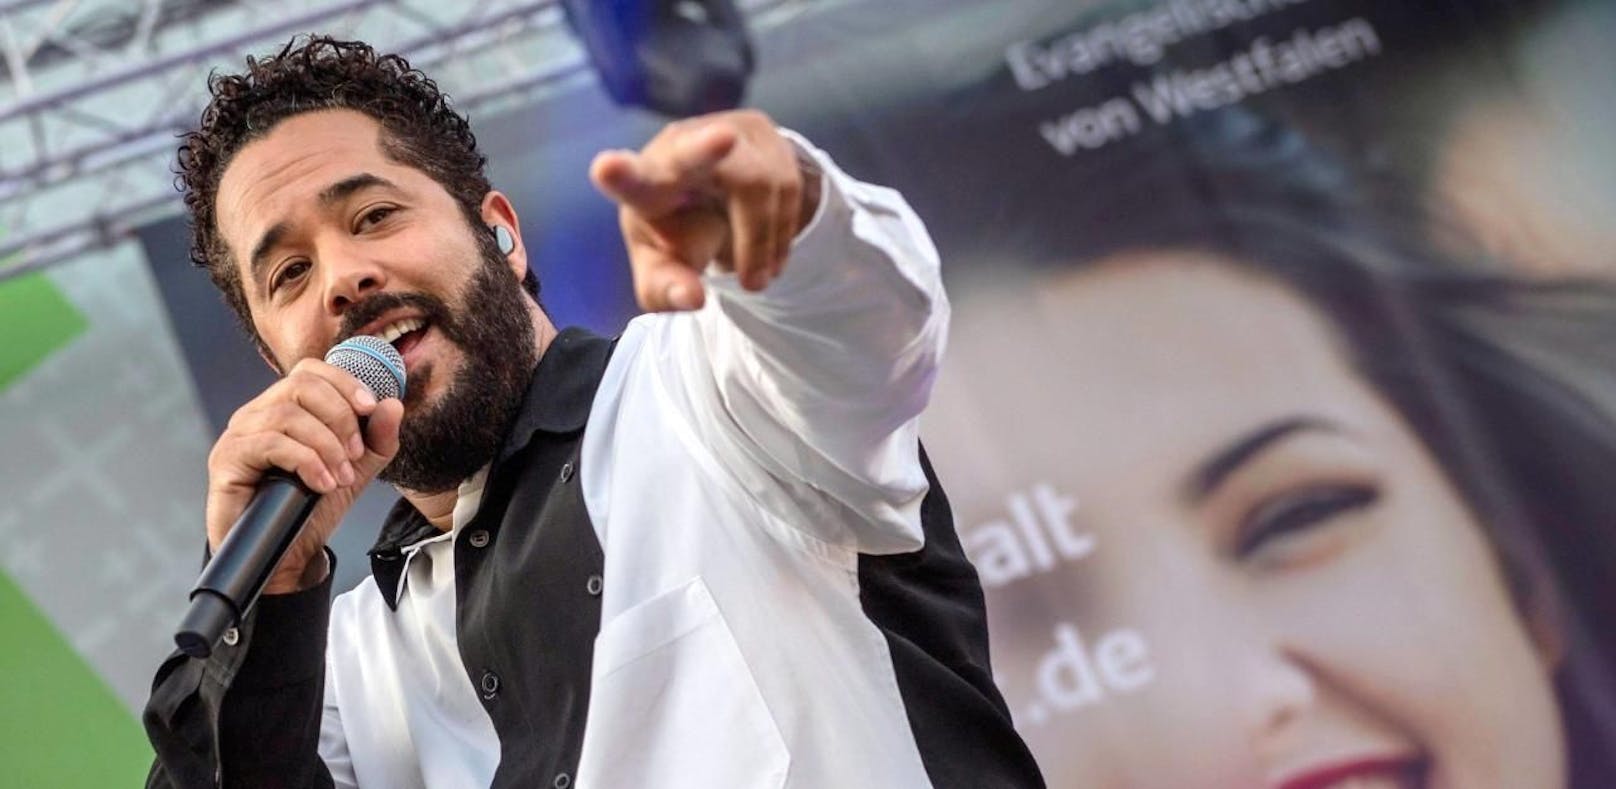 Adel Tawil singt in Wien gegen Gewalt